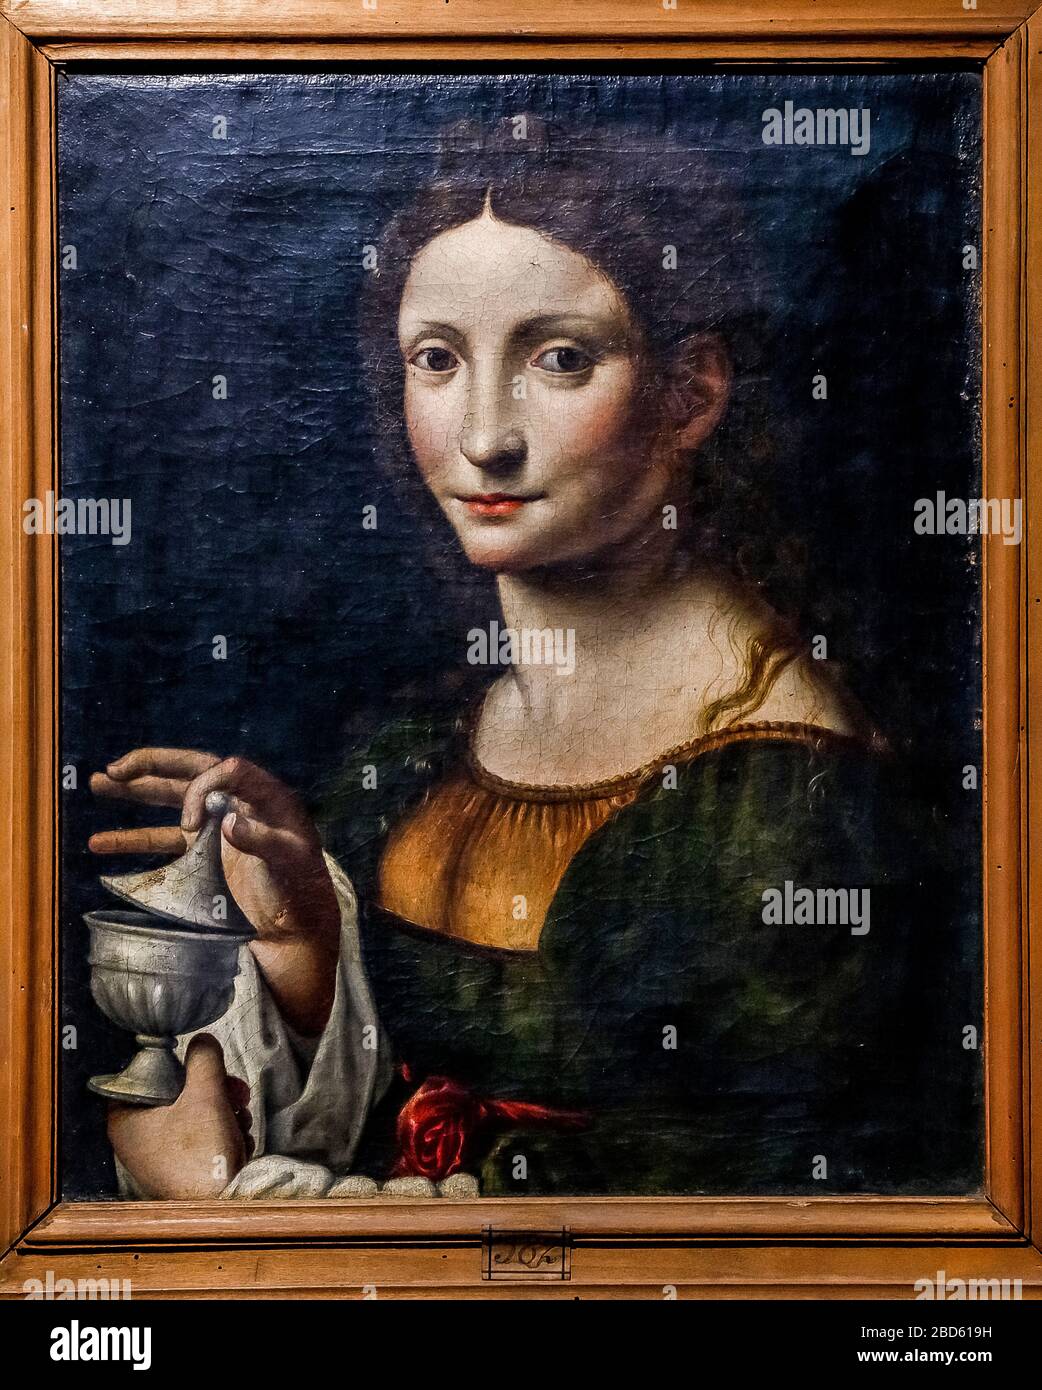 Italy Lombardy - Cremona - Civic Museum -' Ala Ponzone' - Milanese painter: Santa Maria Maddalena Stock Photo